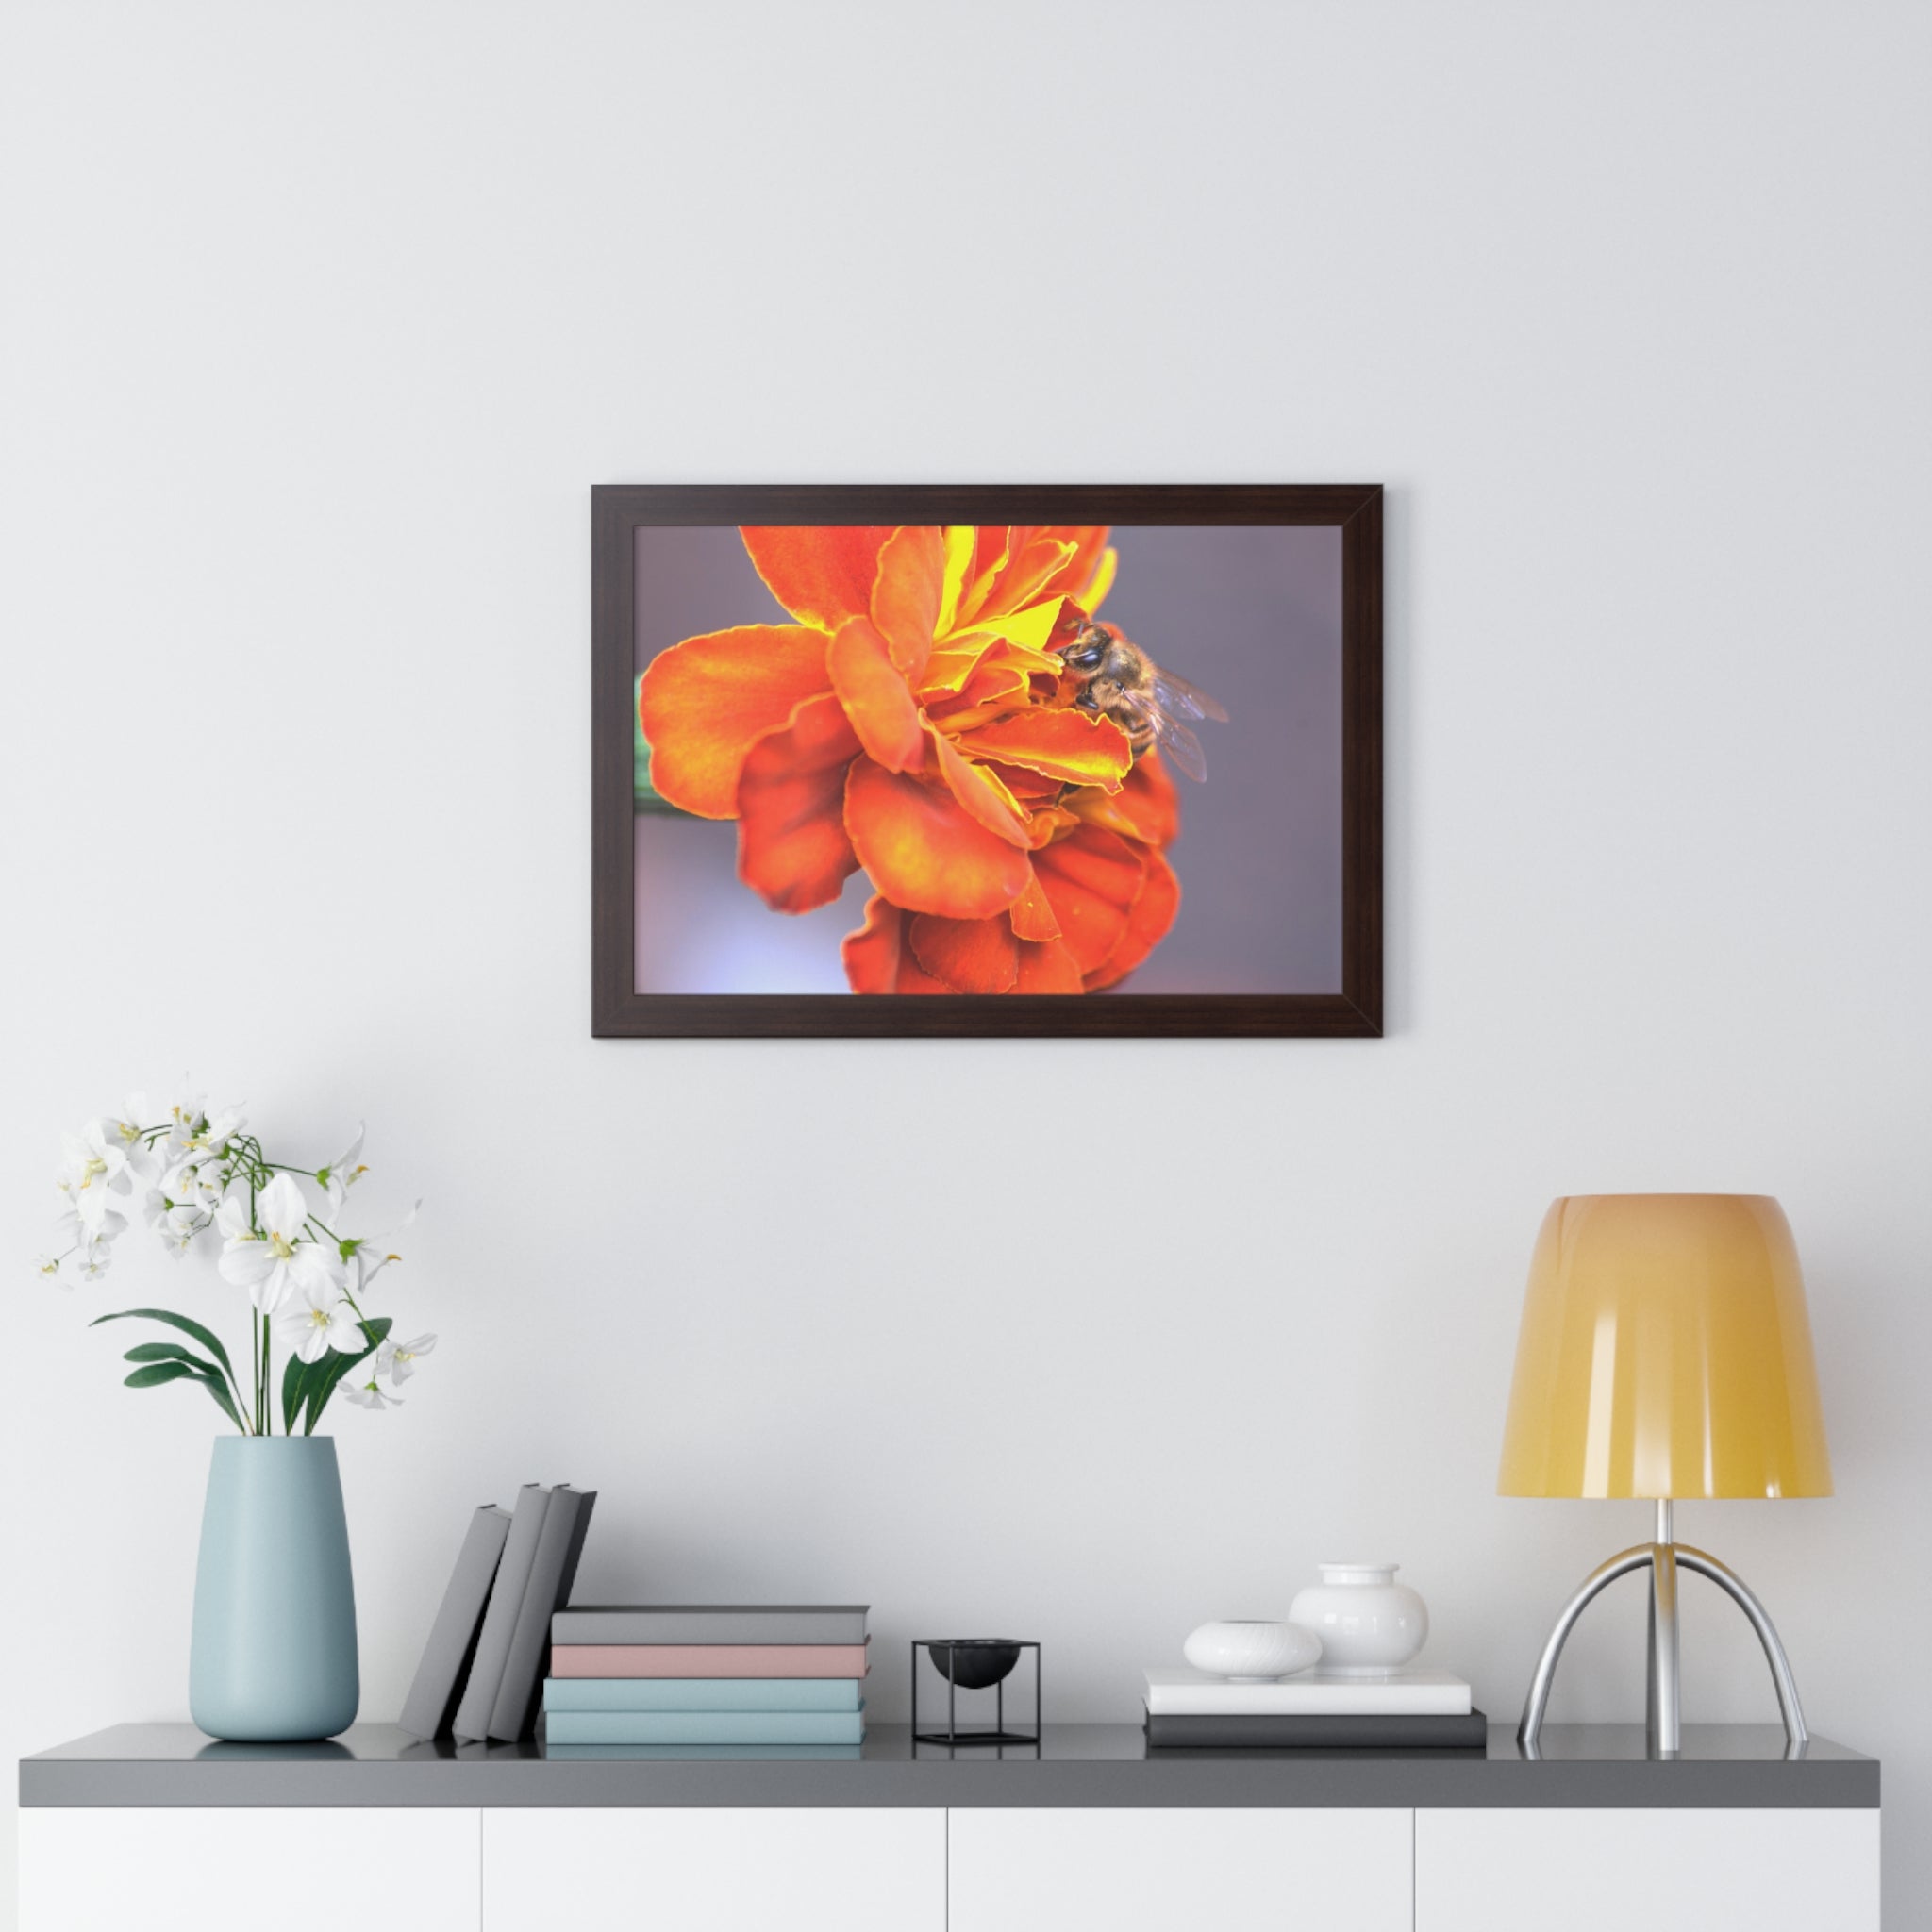 Honeybee on Marigold - Framed Horizontal Poster